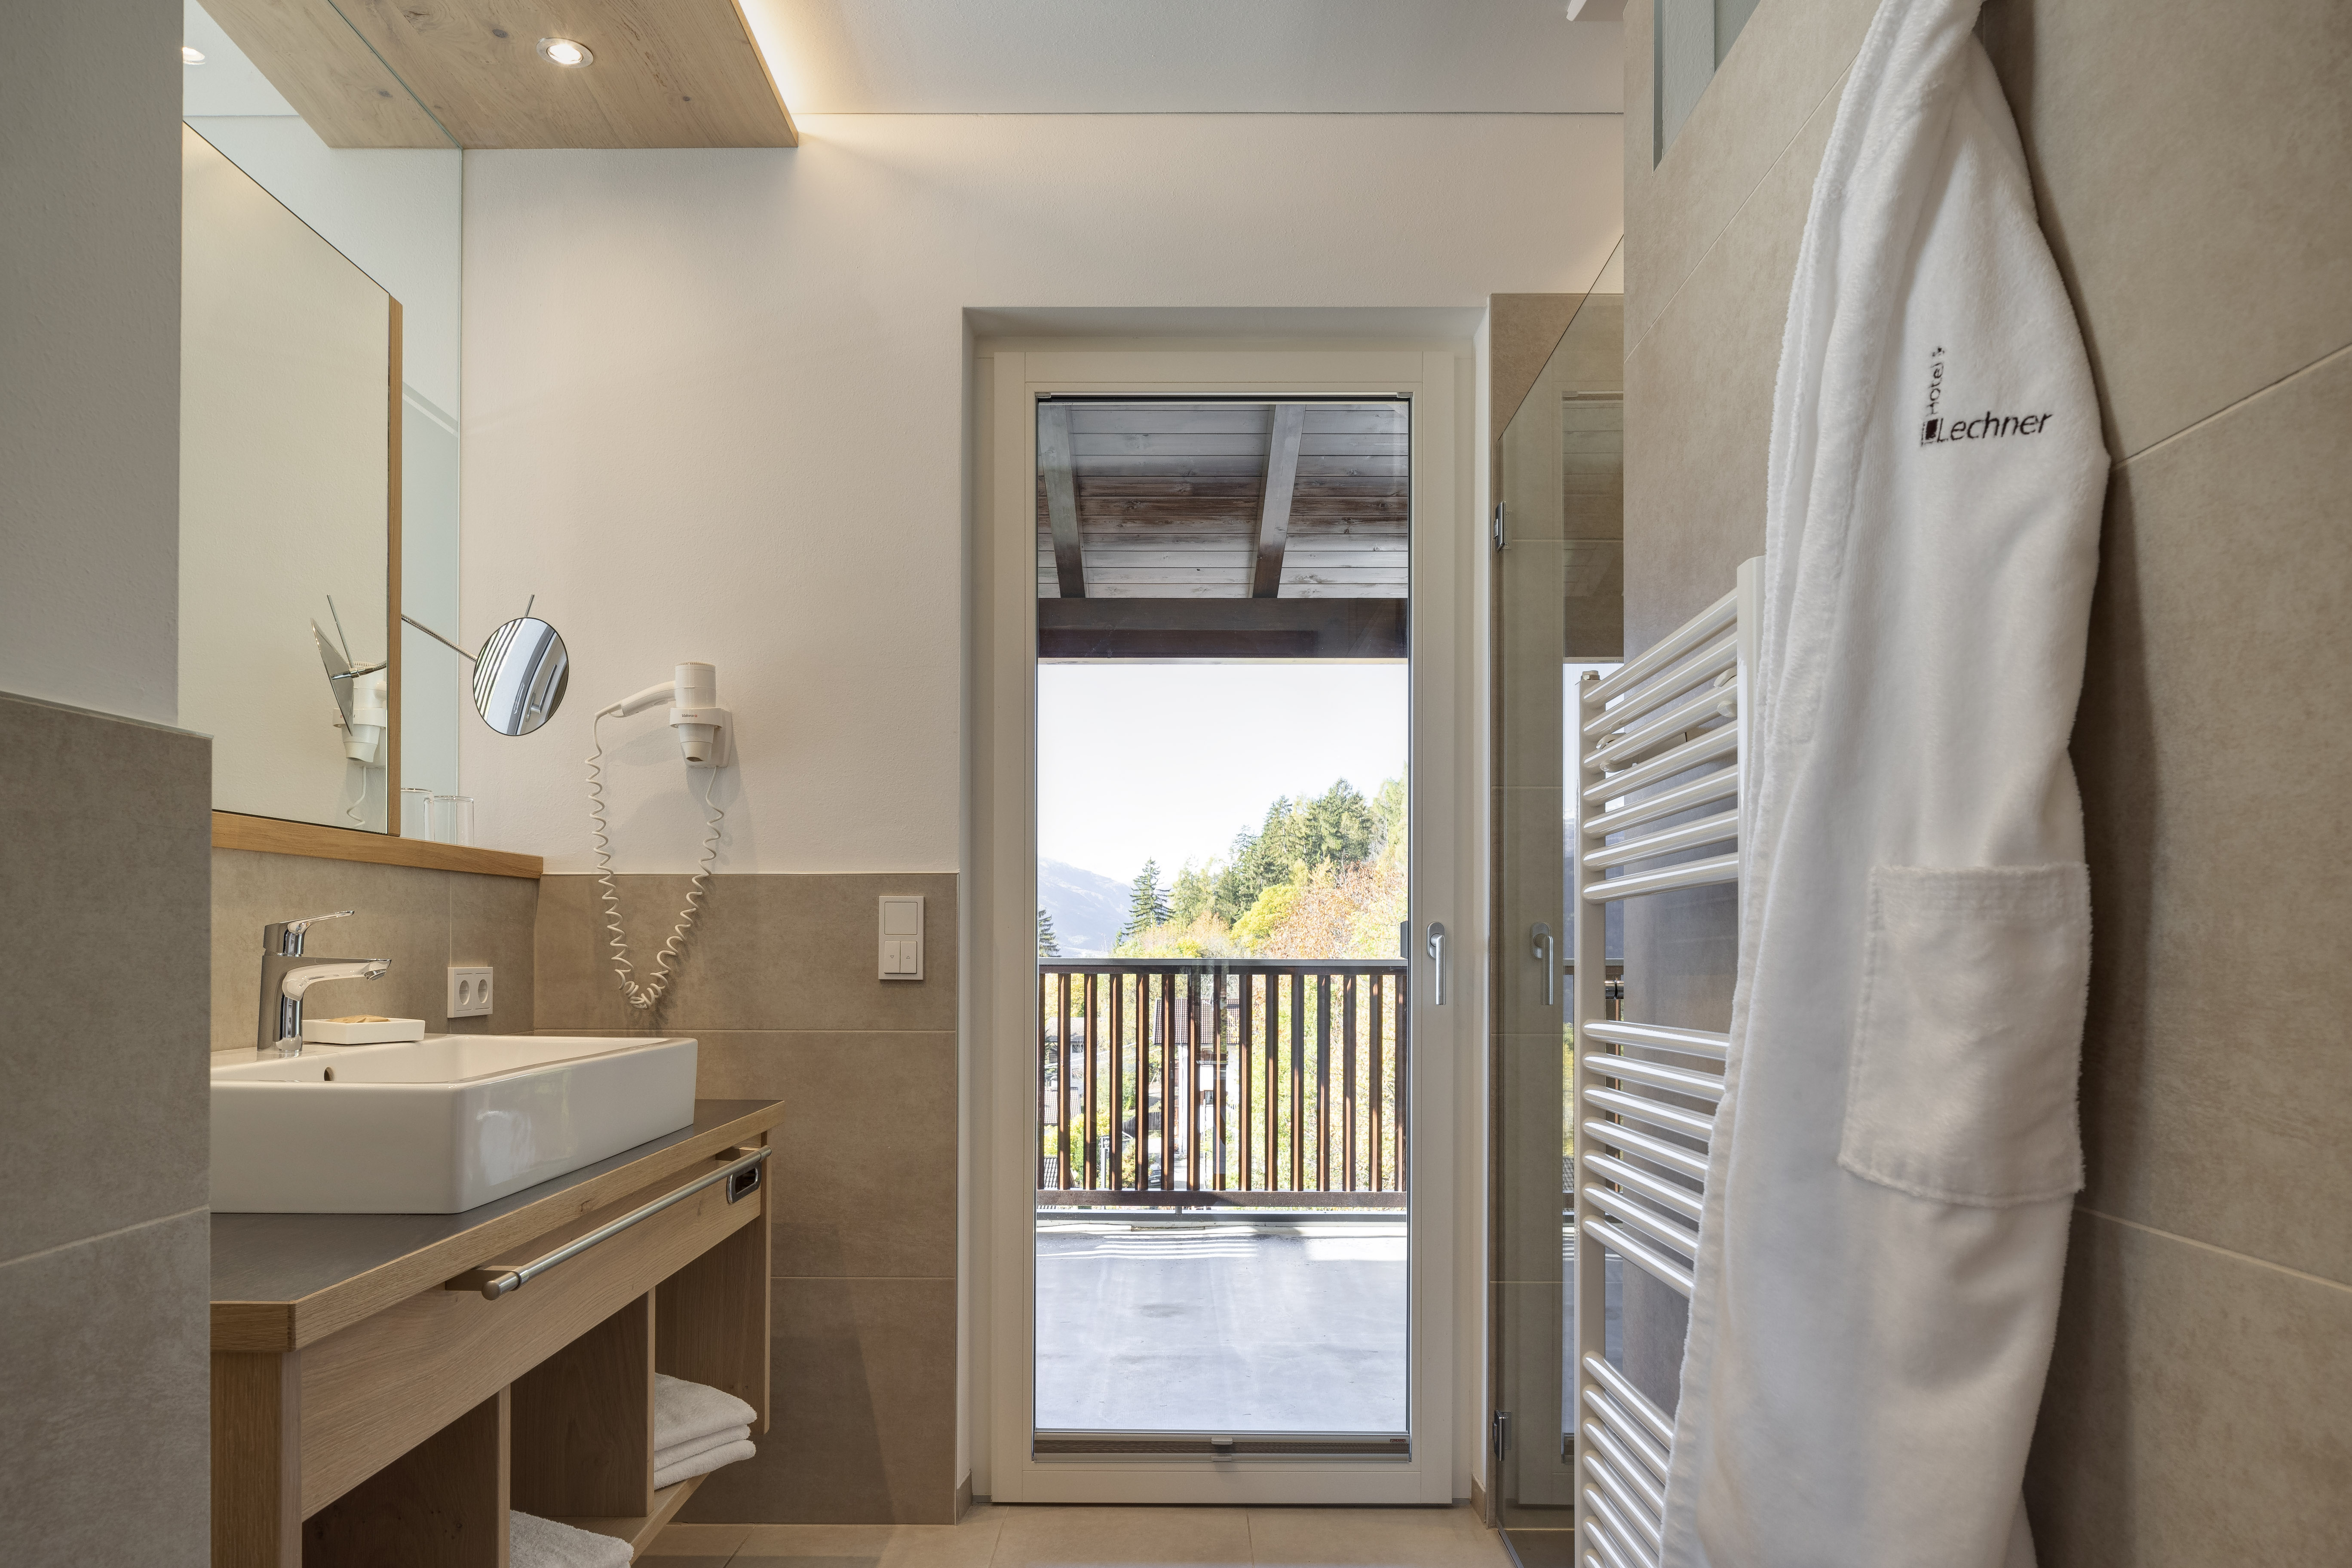 Urlaub Hotel Lechner Badezimmer Waschbecken Panoramazimmer mit Schlafkoje